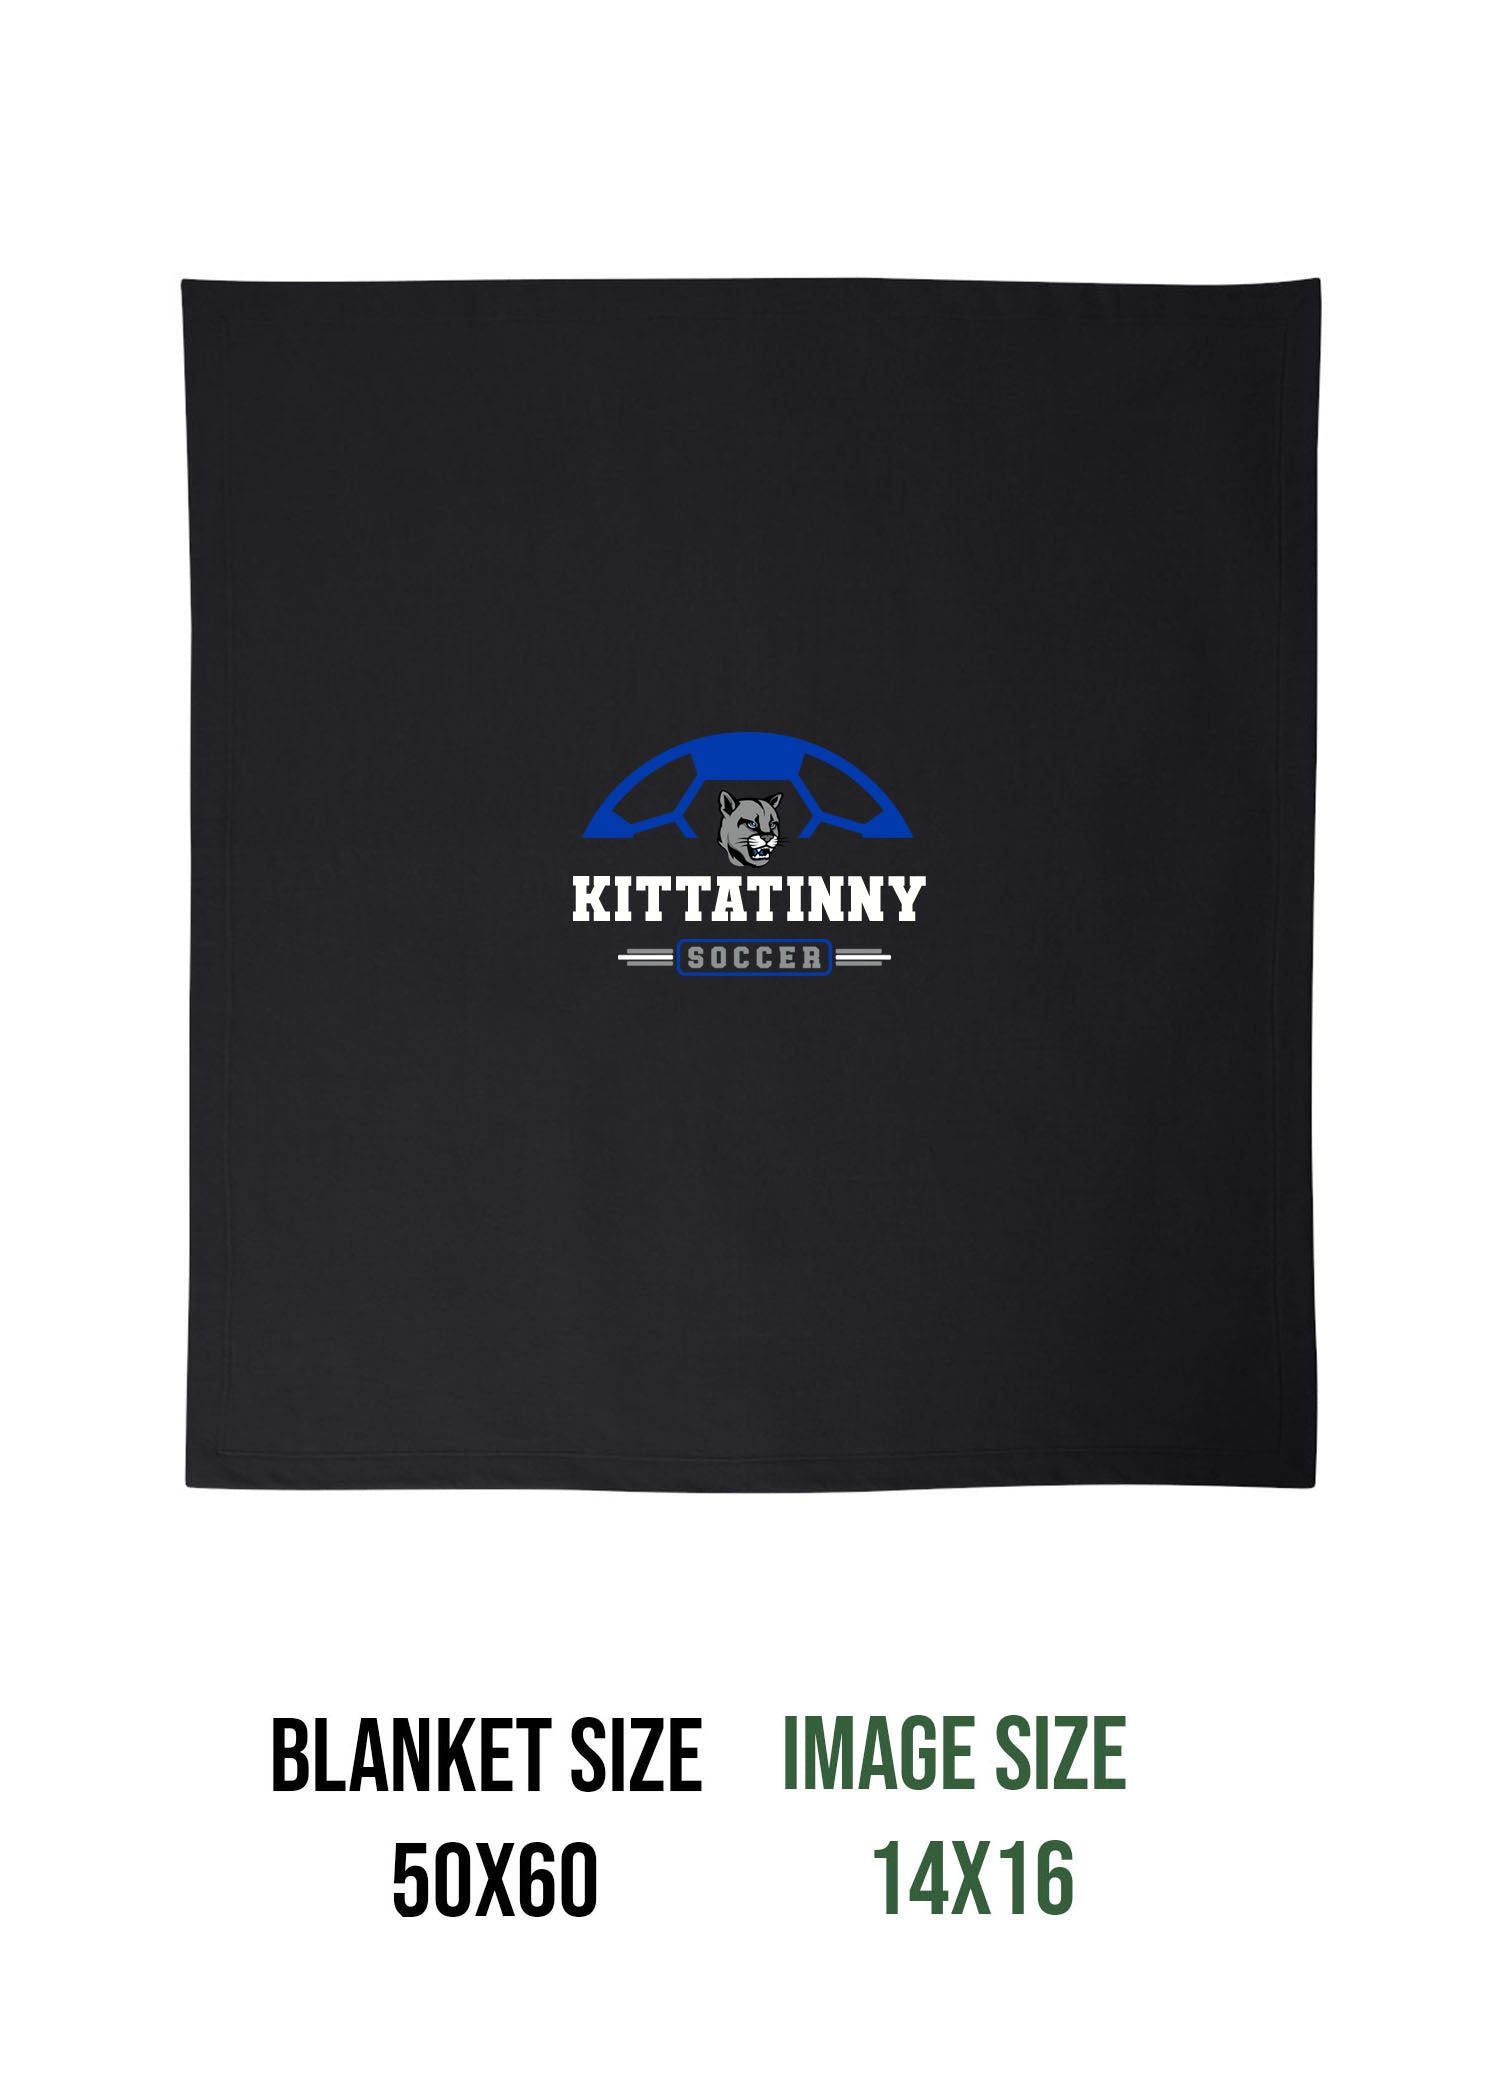 Kittatinny Soccer Design 2 Blanket